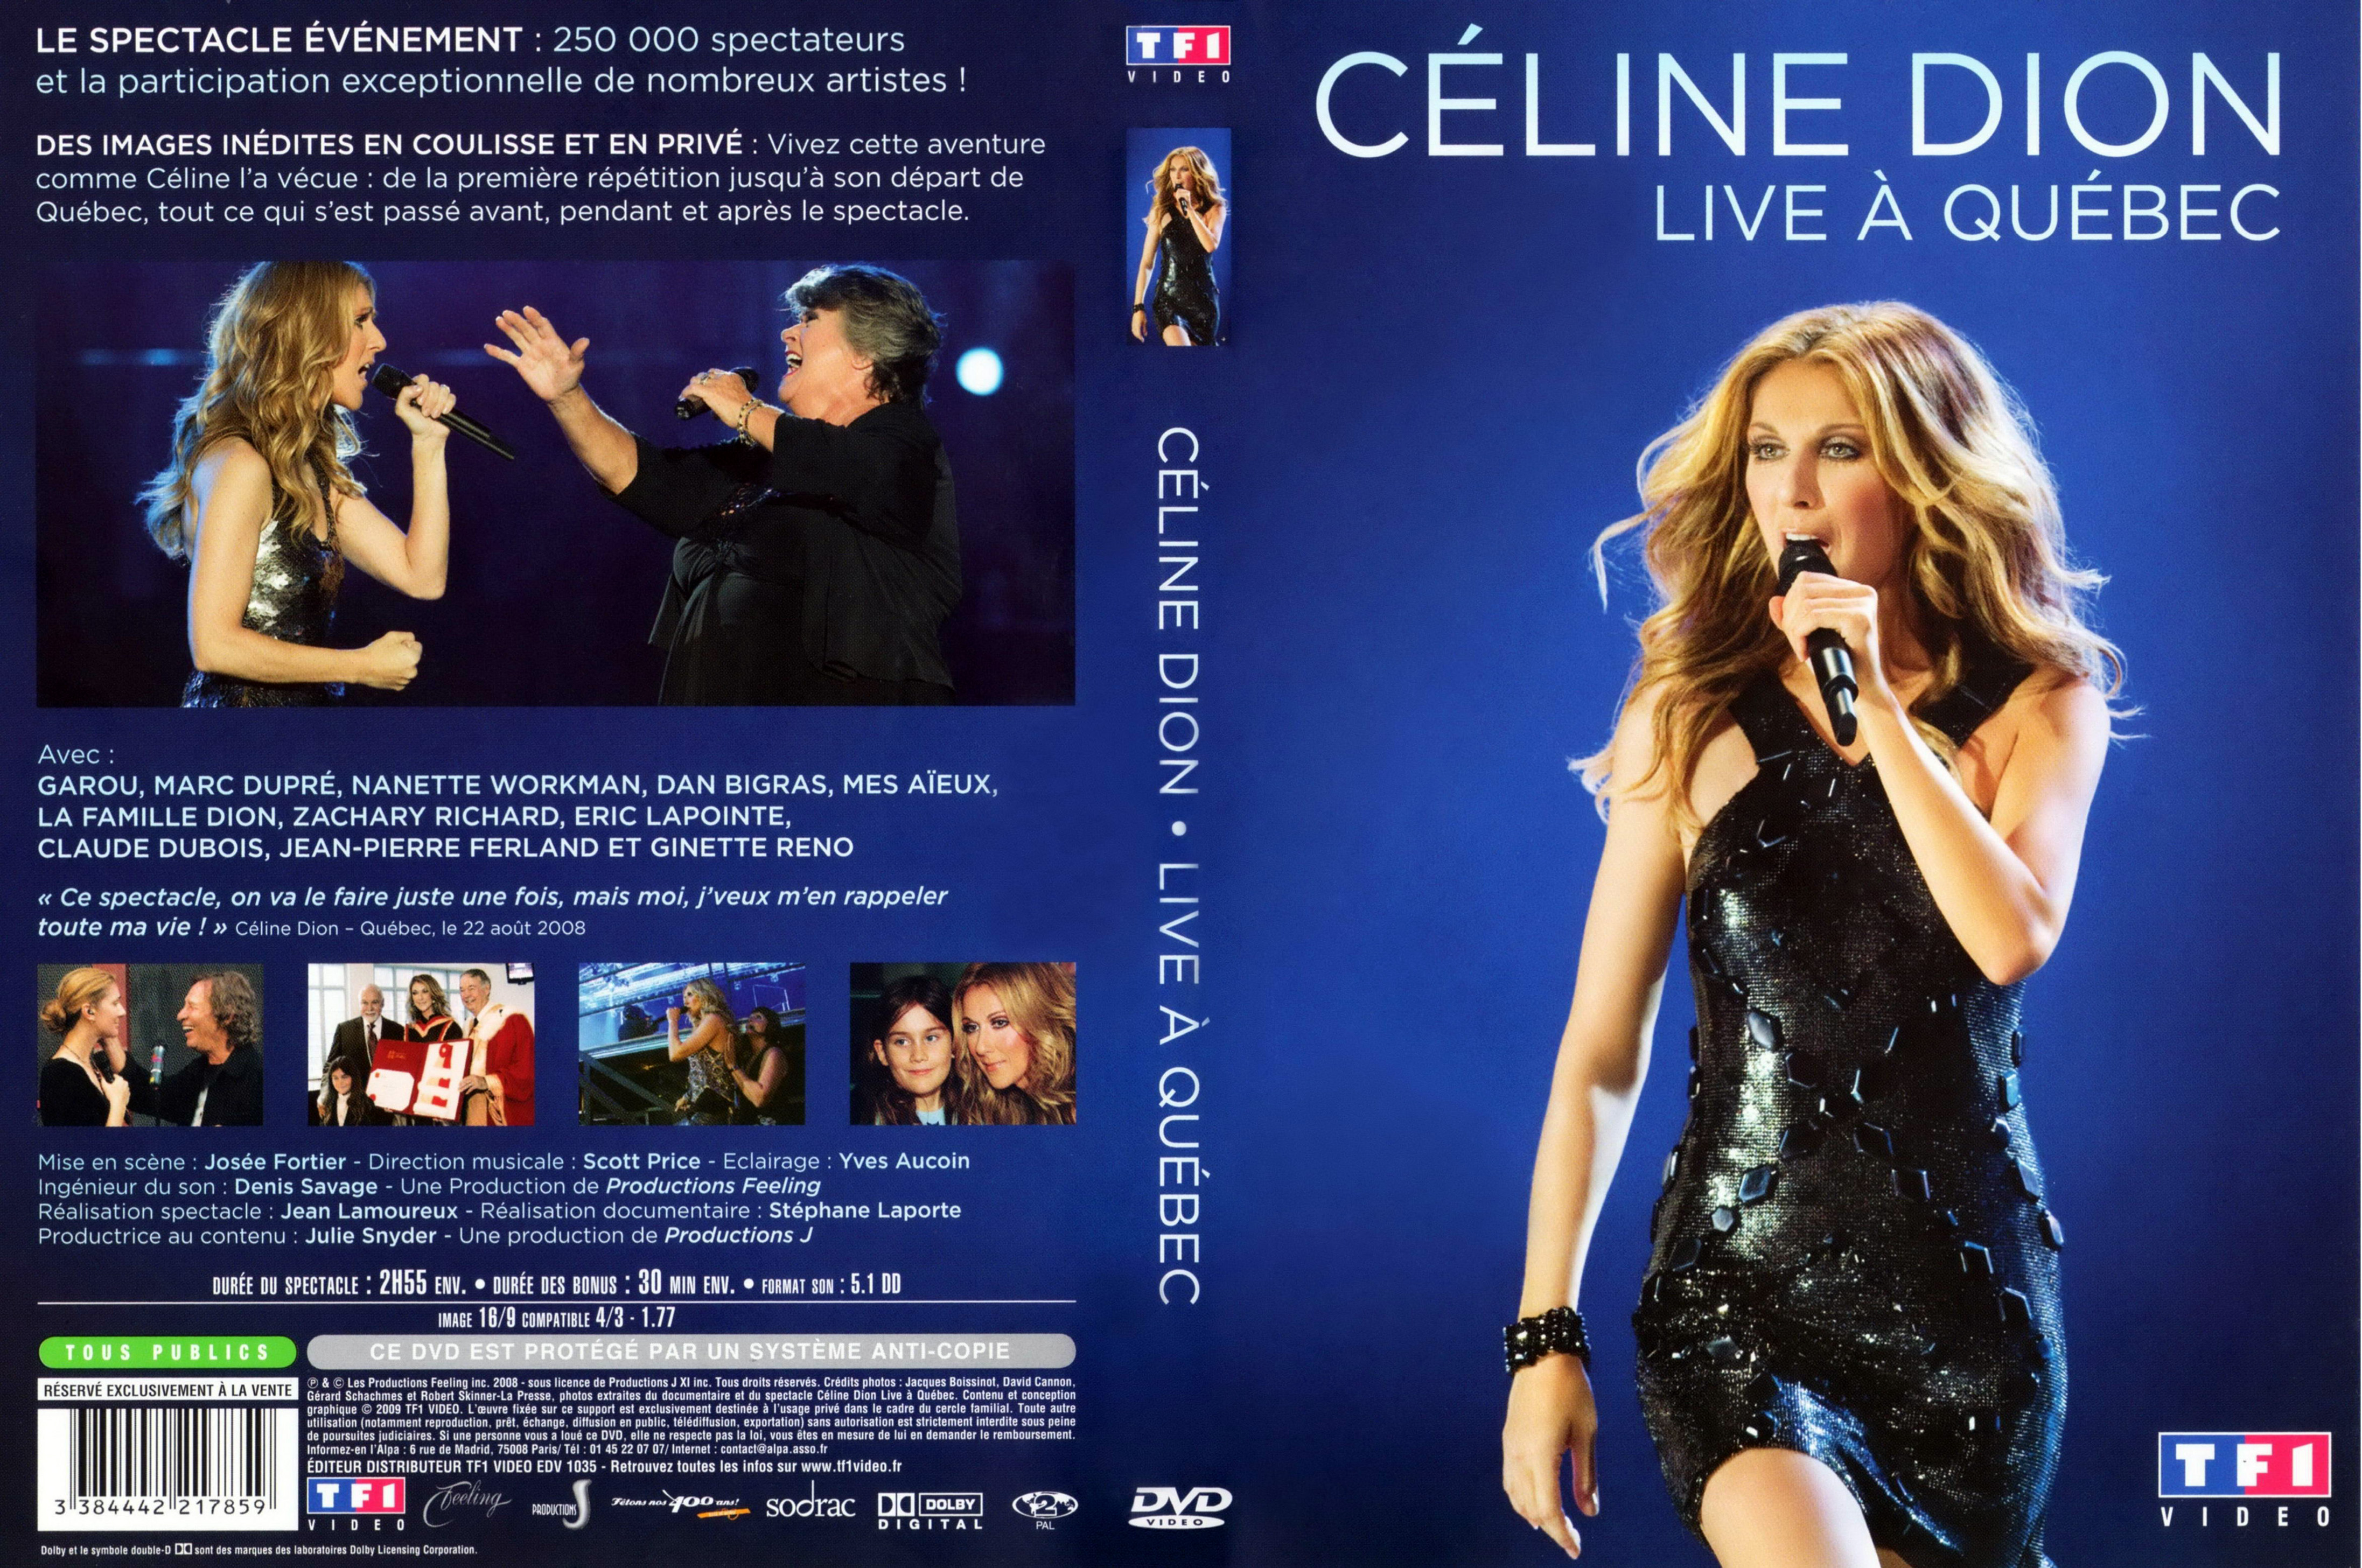 Jaquette DVD Celine Dion - Live  Quebec